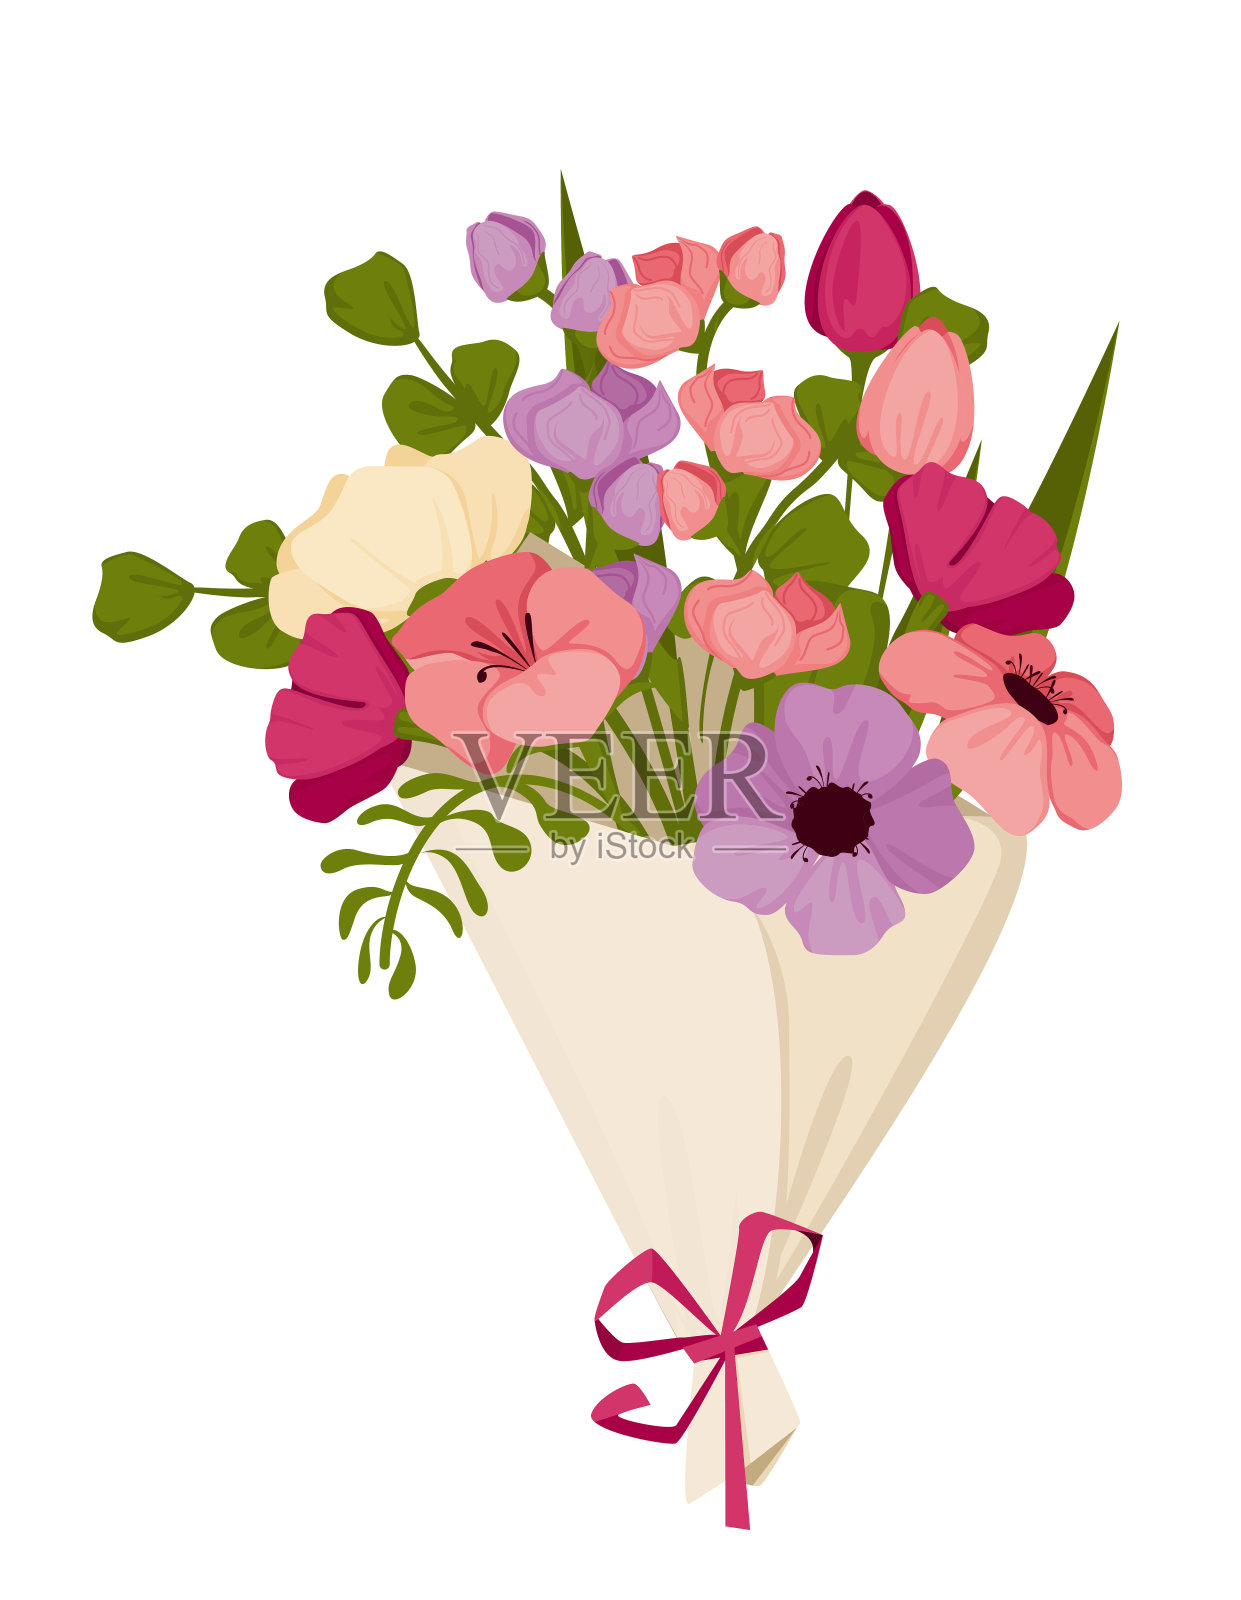 3月8日，国际妇女节，用郁金香等鲜花为母亲节准备的春天花束。向量设计元素图片